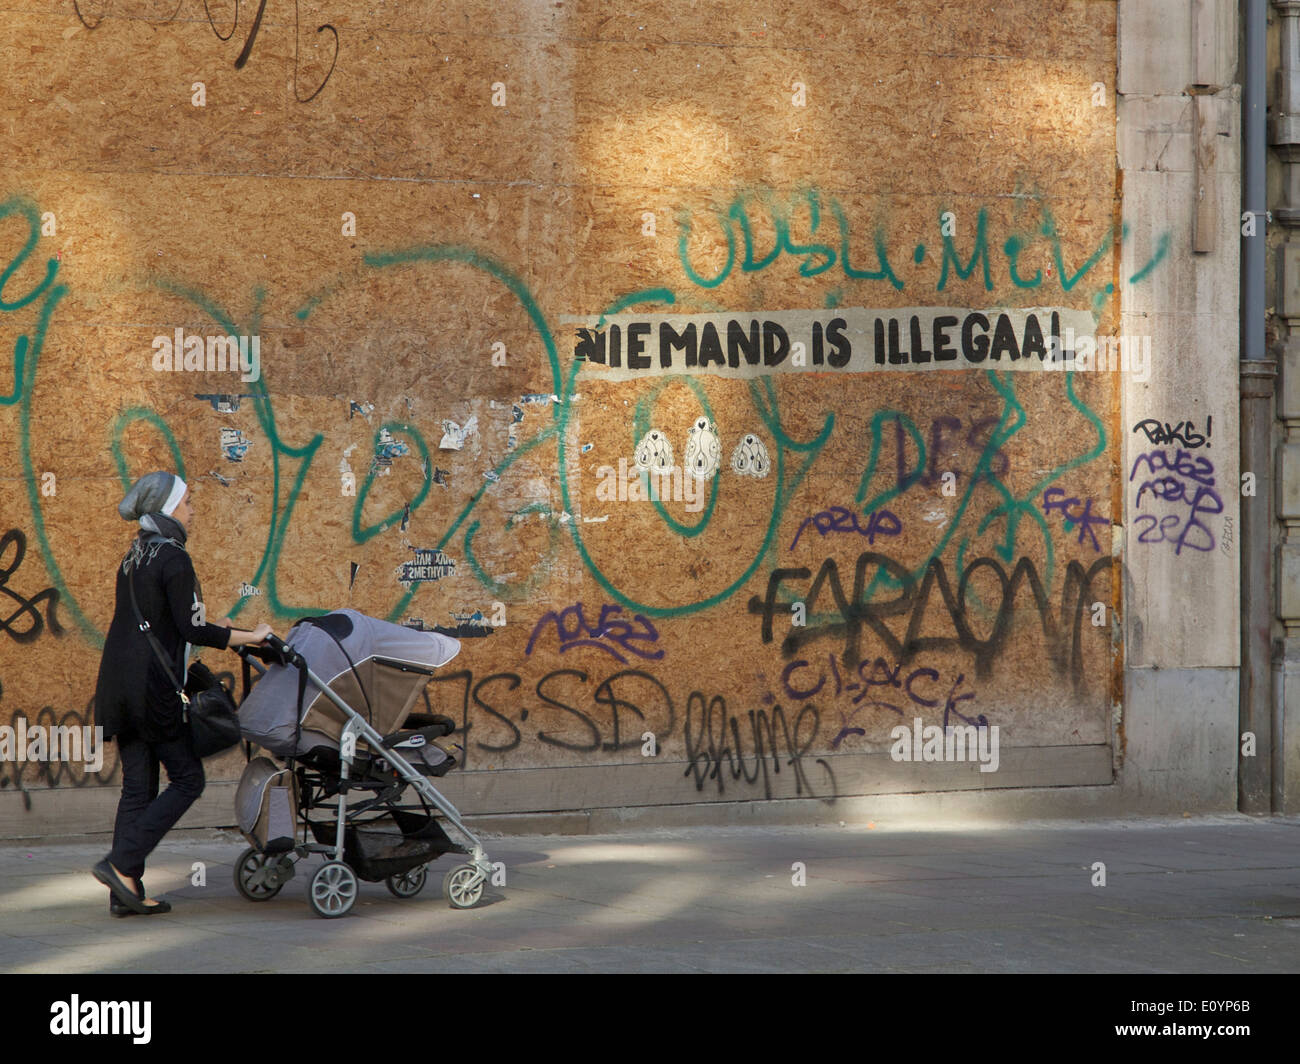 Femme marche en poussant la pram avec graffiti disant personne n'est illégal en langue néerlandaise, Bruxelles, Belgique Banque D'Images